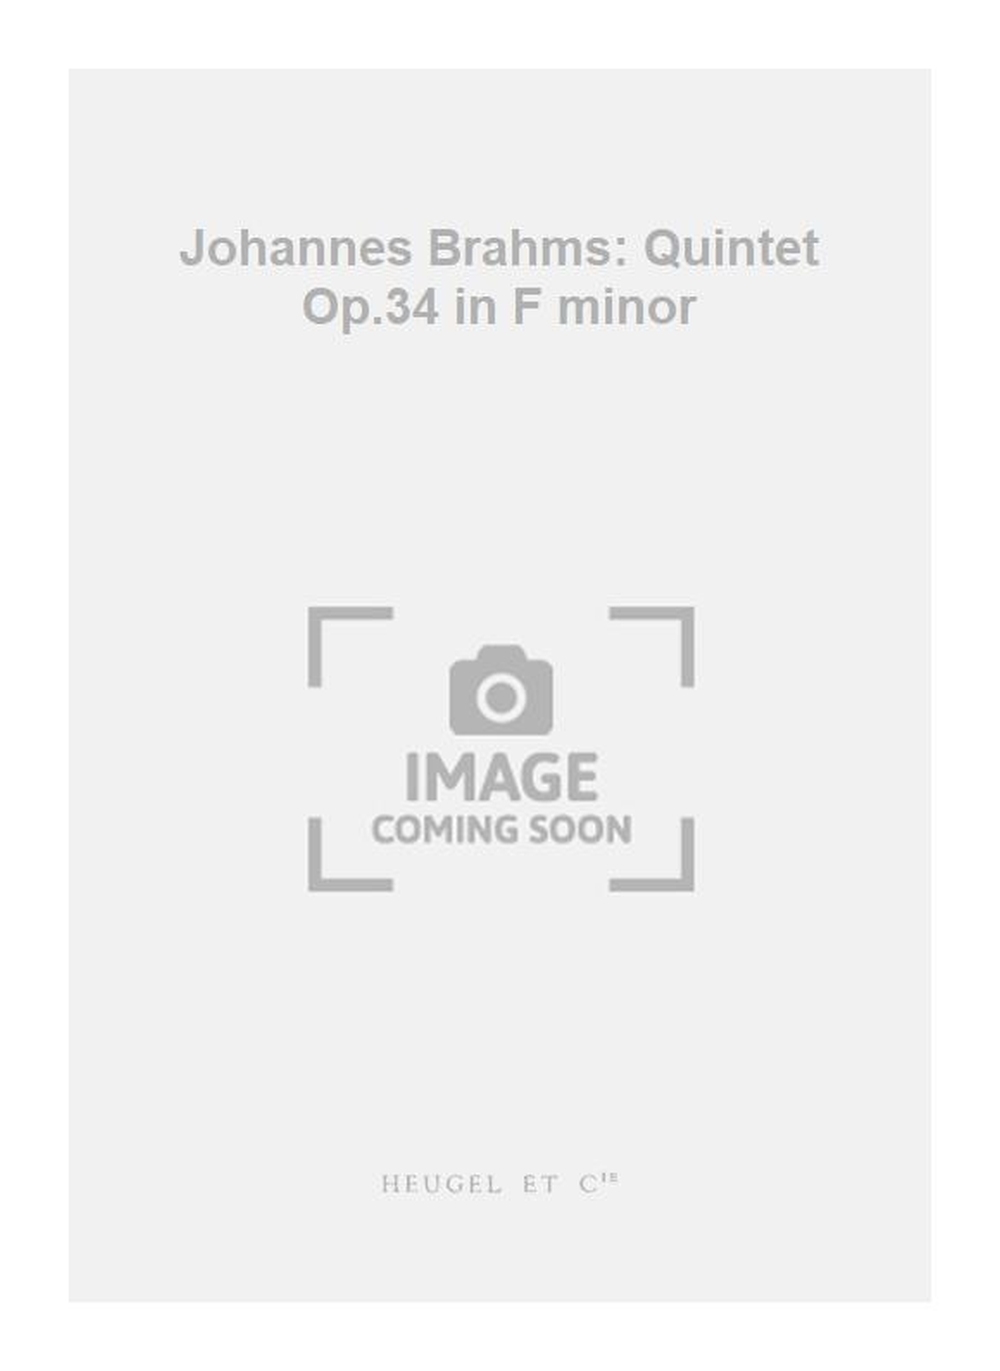 Johannes Brahms: Johannes Brahms: Quintet Op.34 in F minor